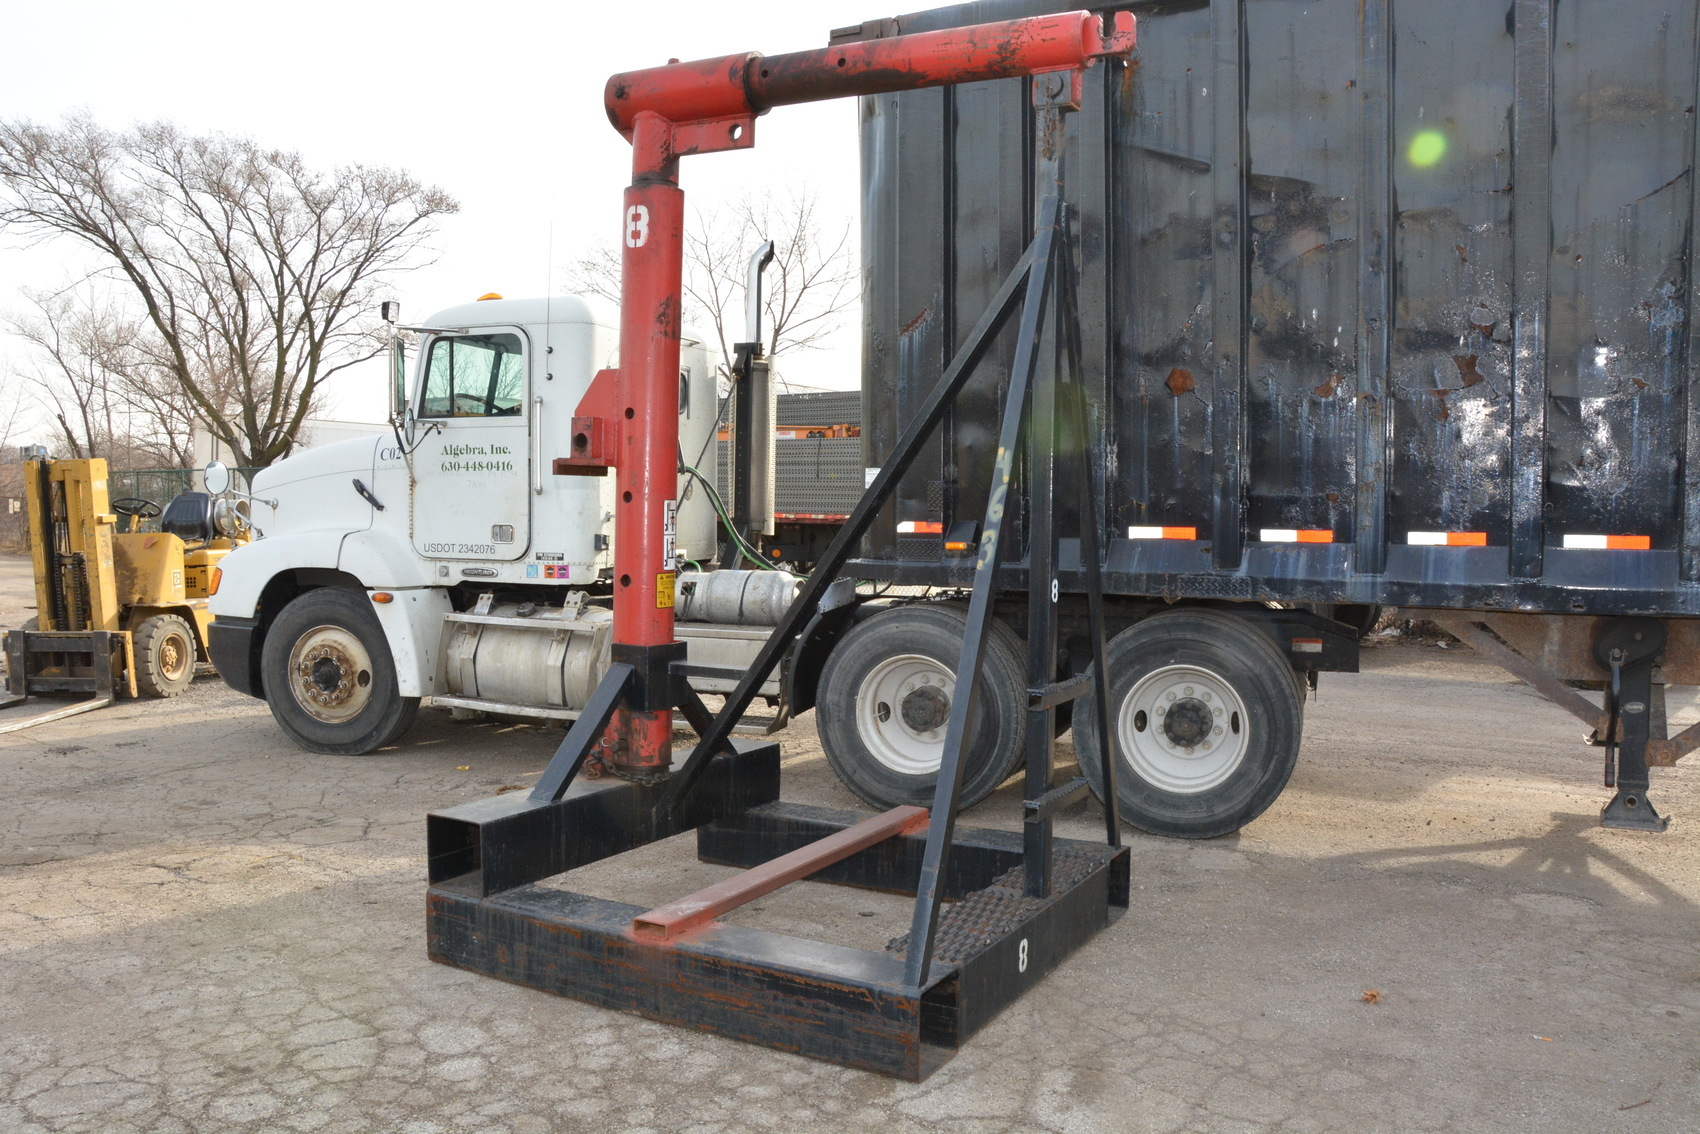 Forklift extendable Jib Lift Boom Crane 30000 lbs cap